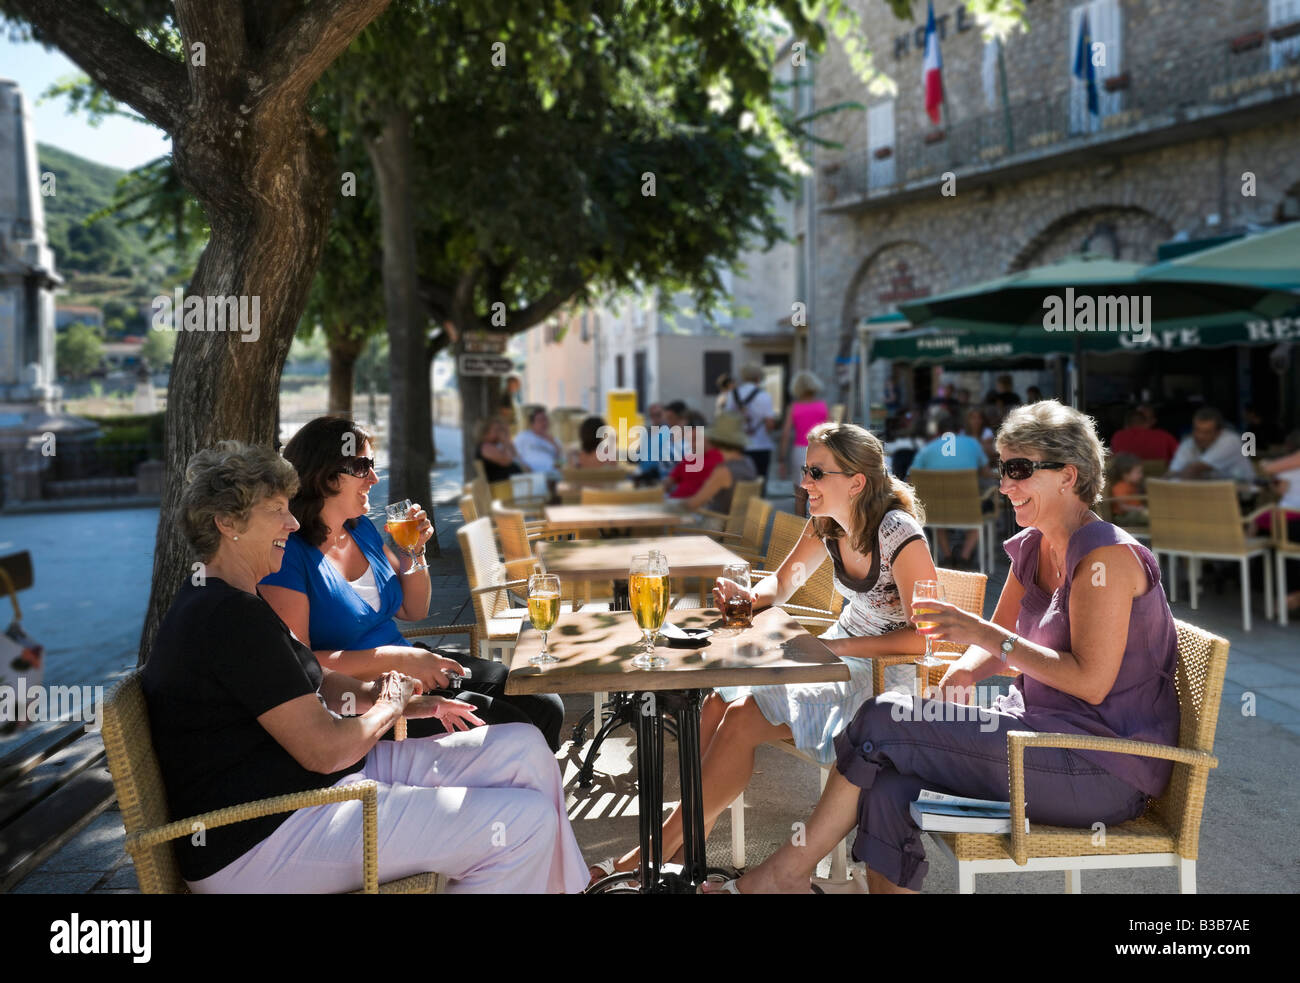 Vier Frauen sitzen in einem Café in der Place De La Liberation (besser bekannt als der Ort Porta), Sartene, Korsika, Frankreich Stockfoto